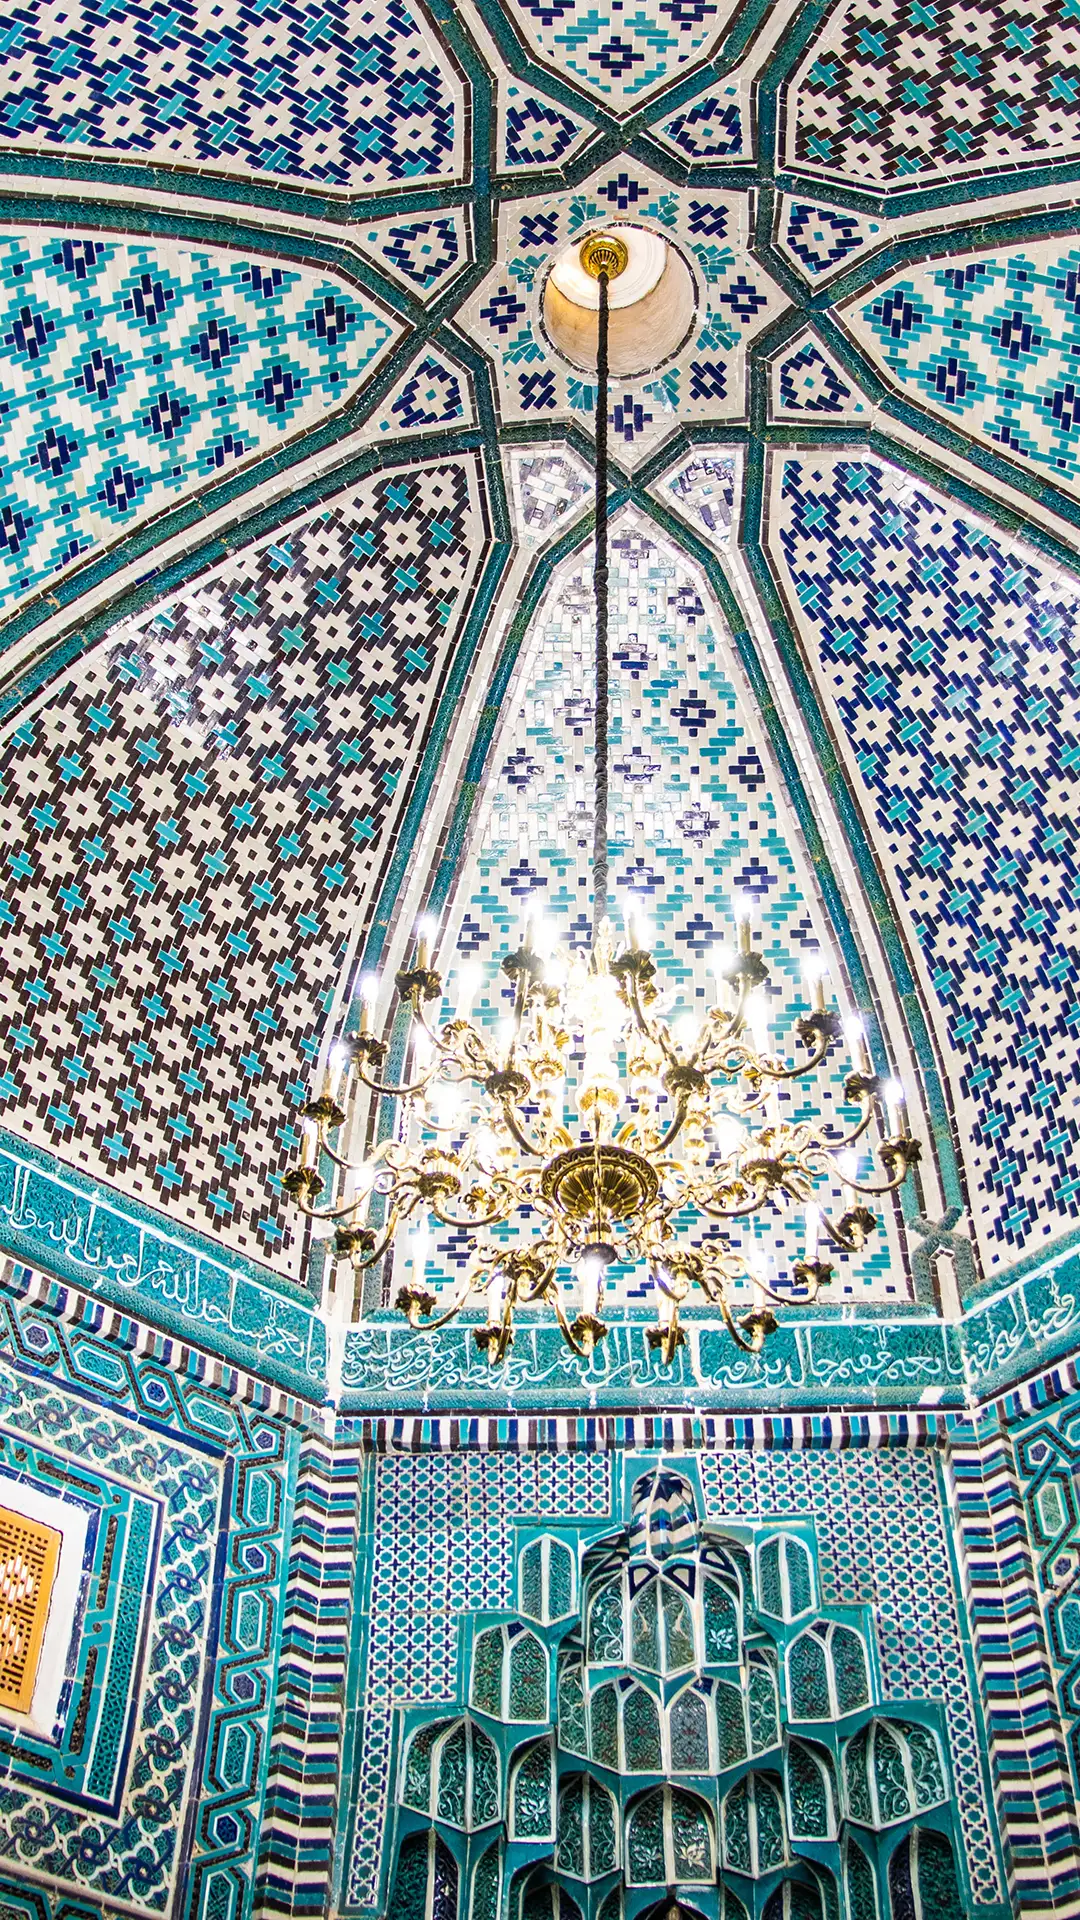 Shah-i-Zinda at Samarkand, Uzbekistan.